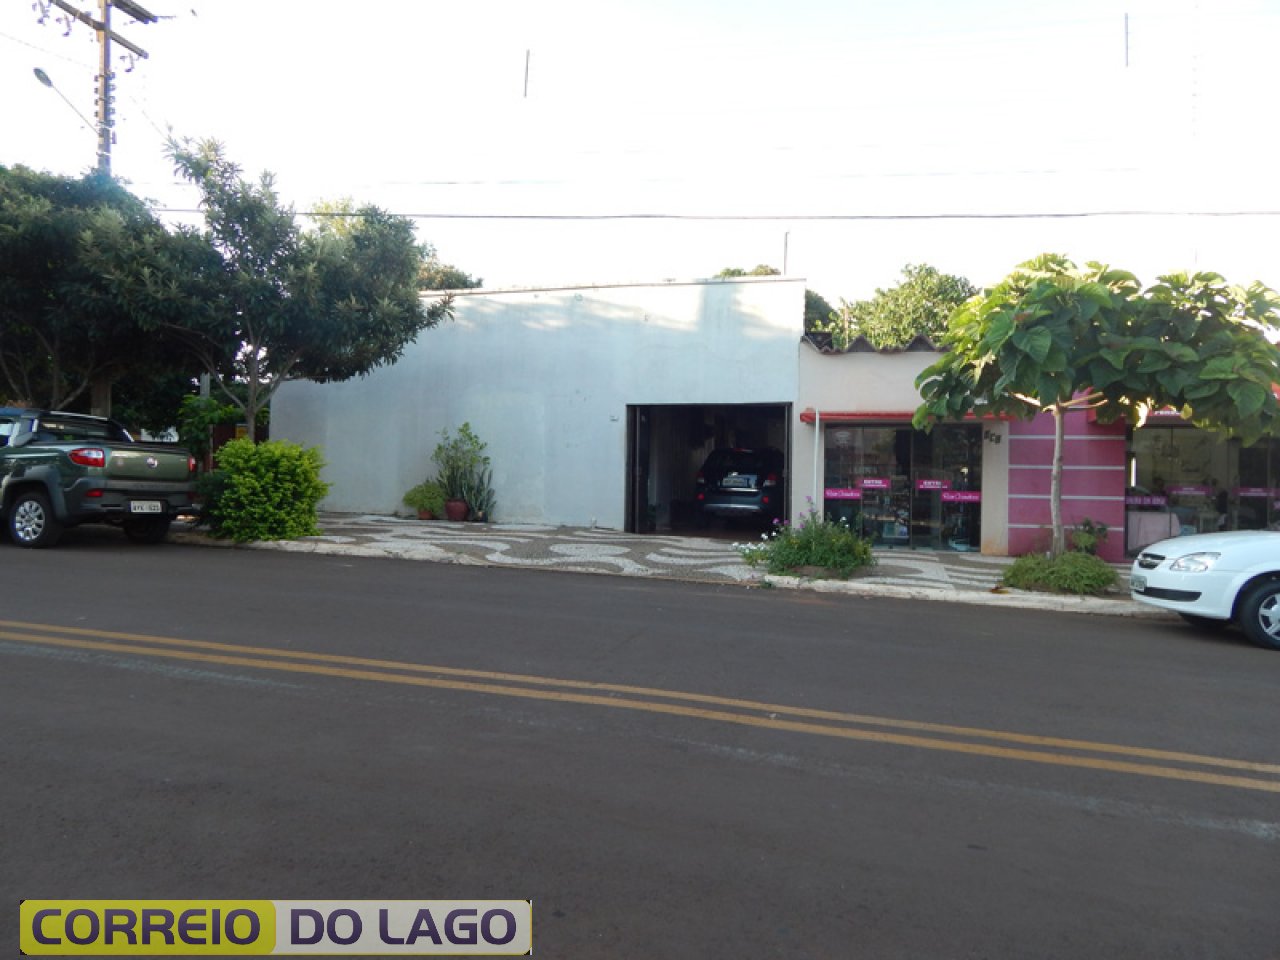 Residência de Avelino e Maria Webber. Localizada à Rua Porto Alegre 440, centro de SH. Nesta casa residem a 23 anos.